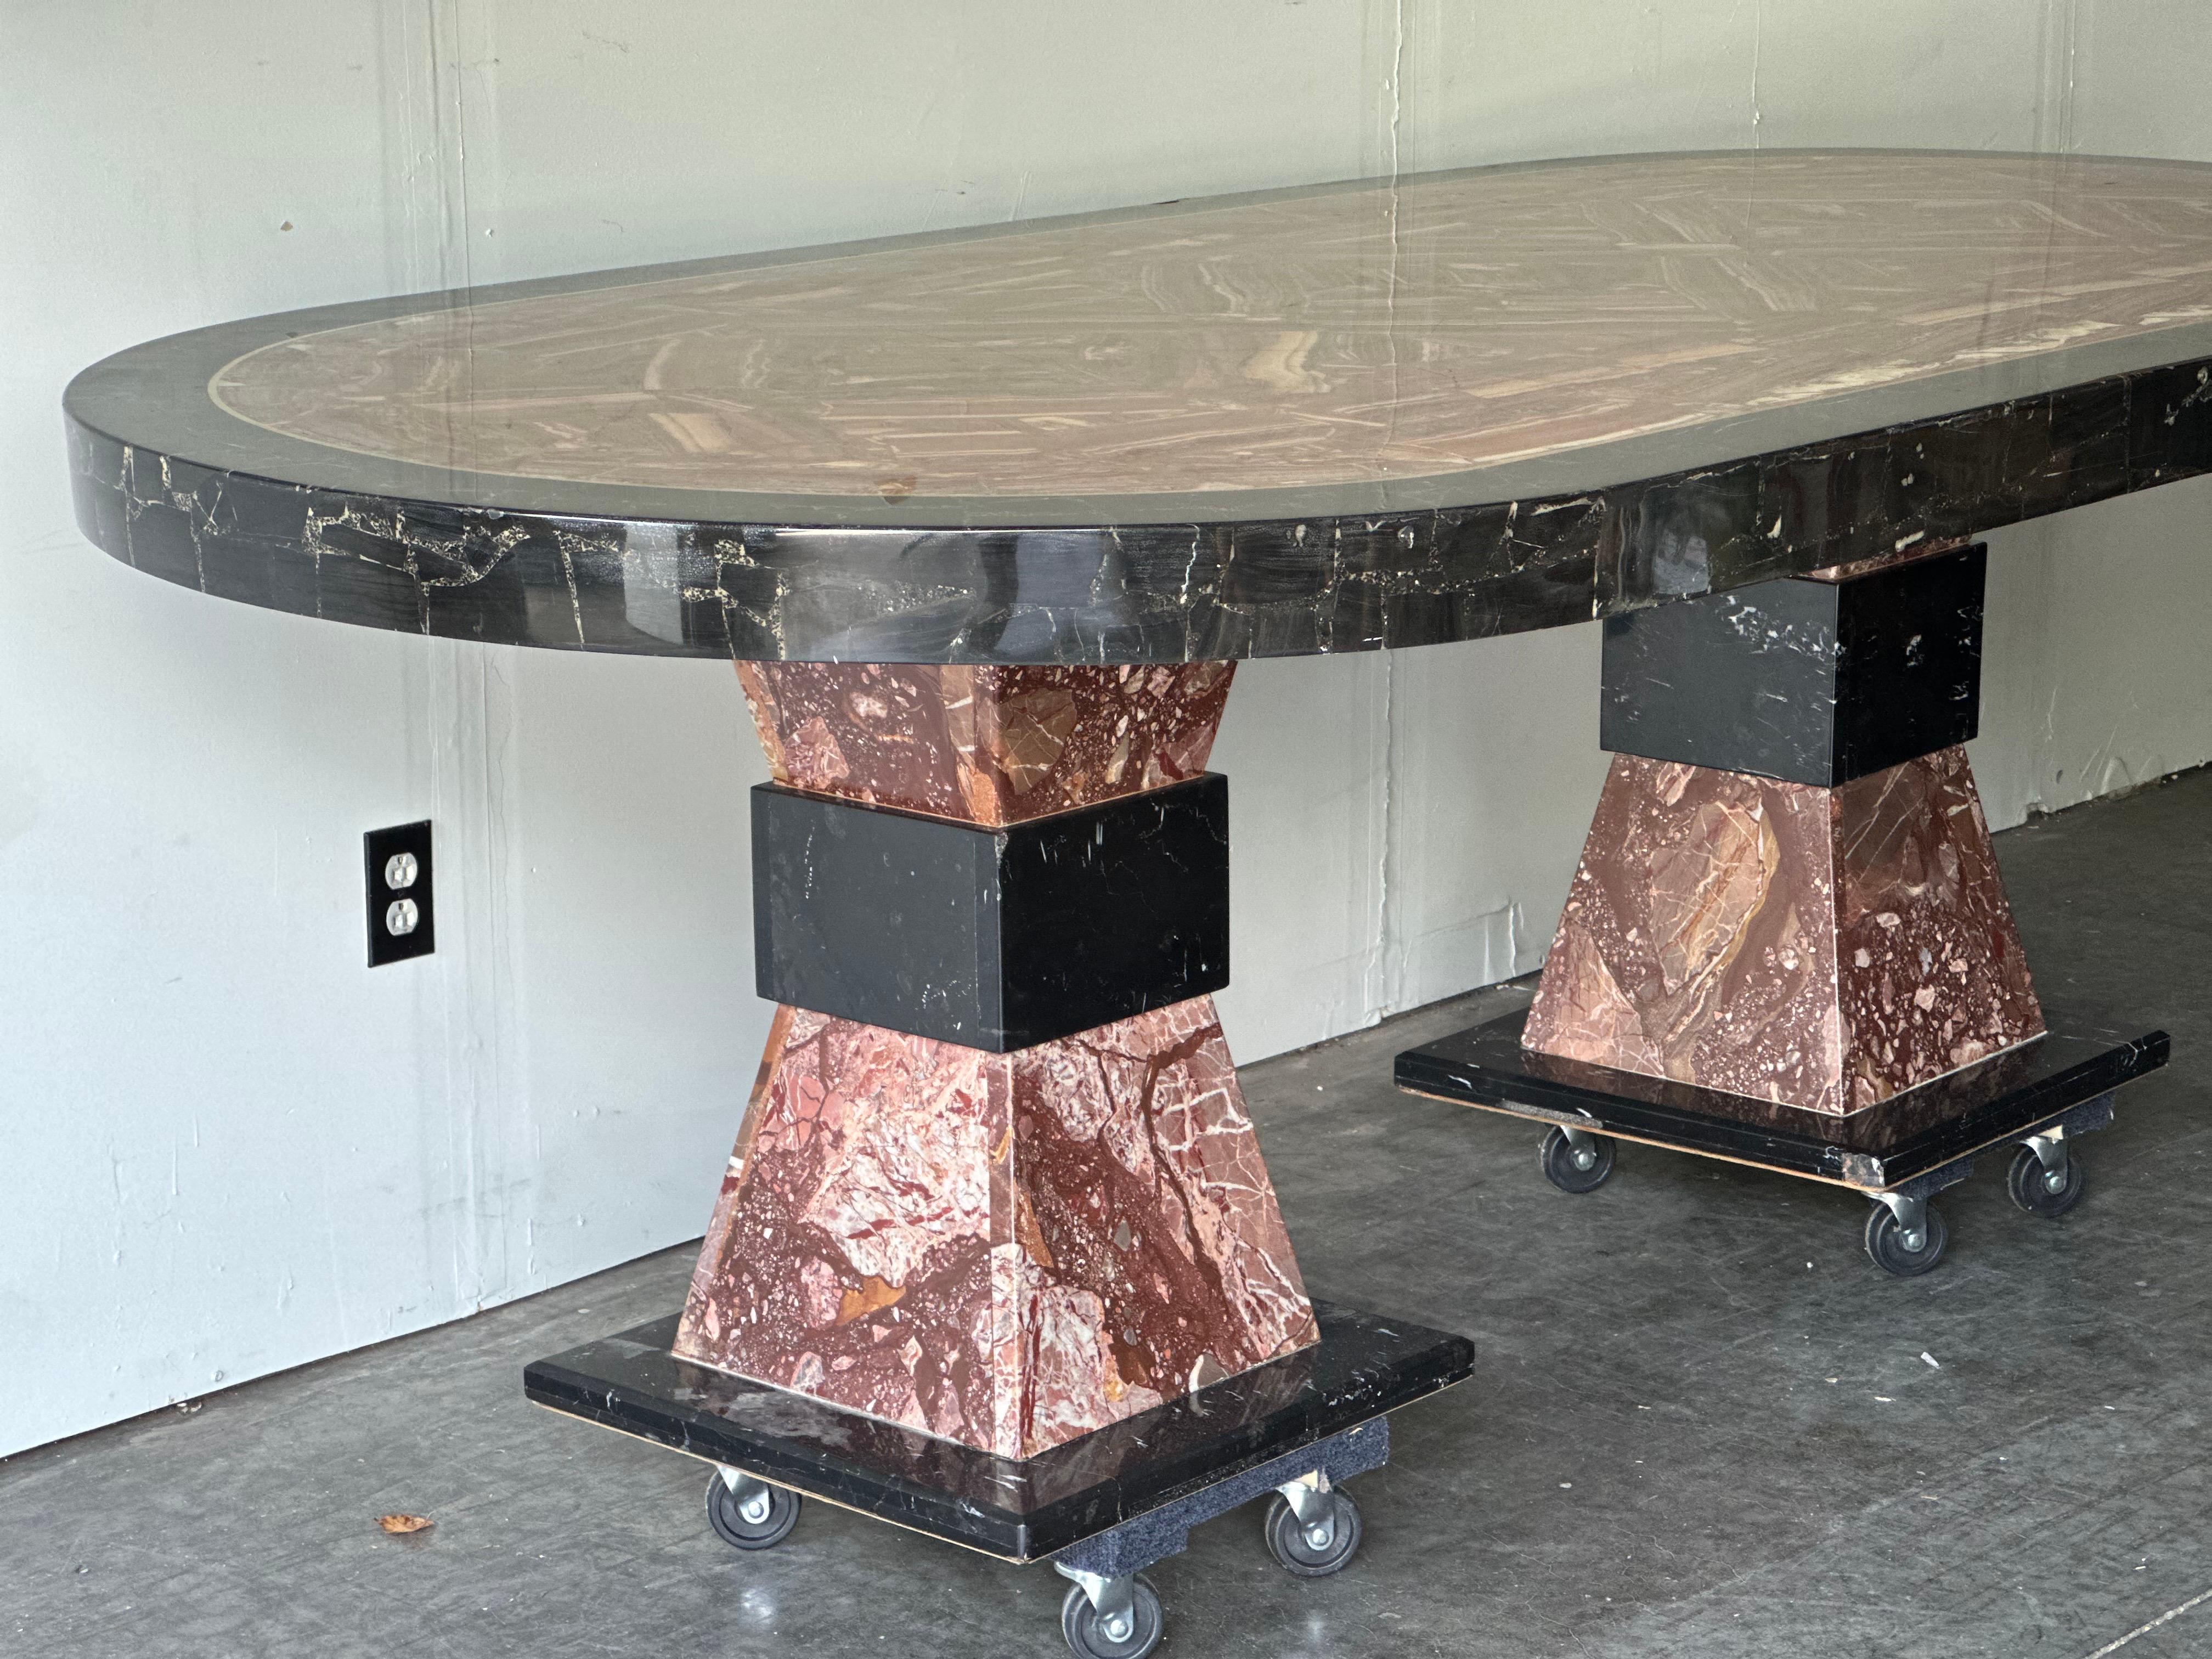 Ovaler Esstisch aus Onyx und Marmor von Muller of Mexico. Die große Tischplatte ruht auf zwei Steinsockeln. Die Epoxidharzoberfläche der Tischplatte hat leichte Abplatzungen, wie auf den Fotos zu sehen ist. Kann entfernt oder repariert werden, ist